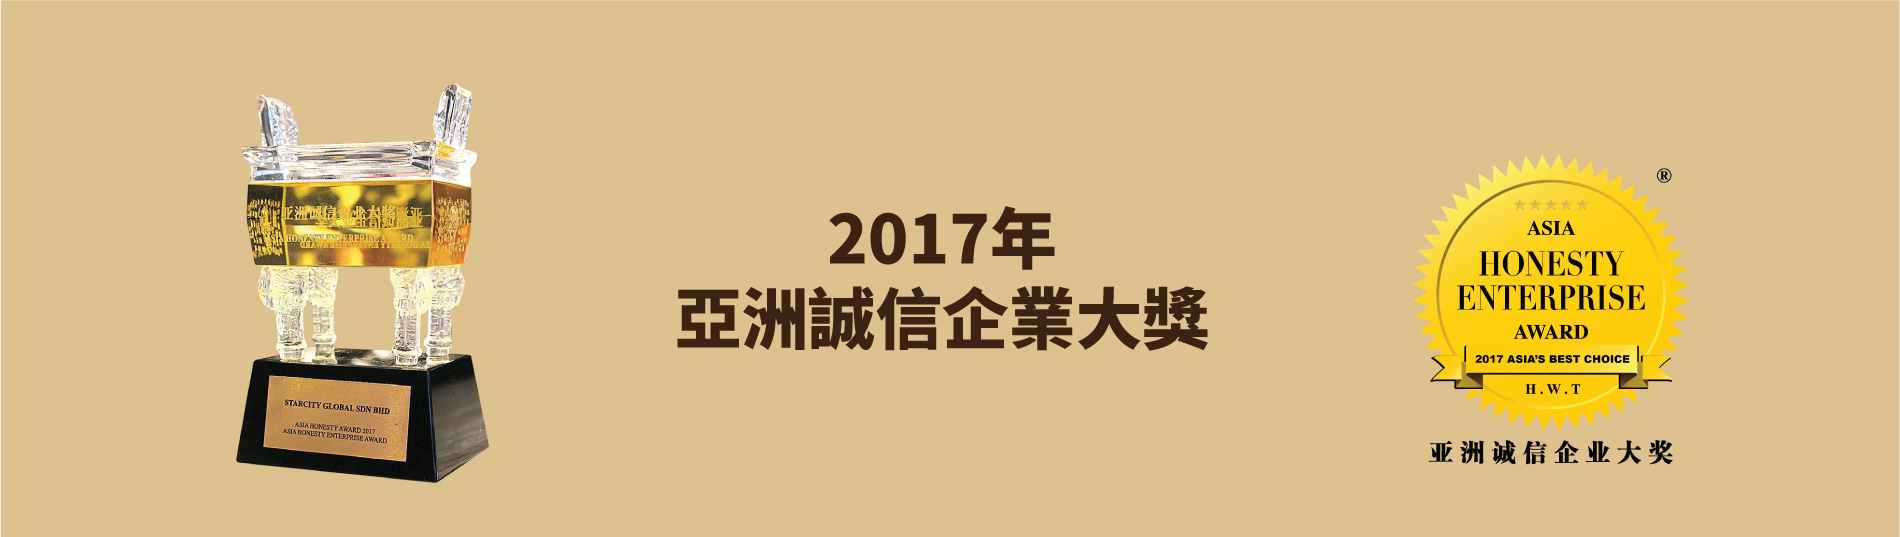 2017年亞洲誠信企業大獎：星匯國際